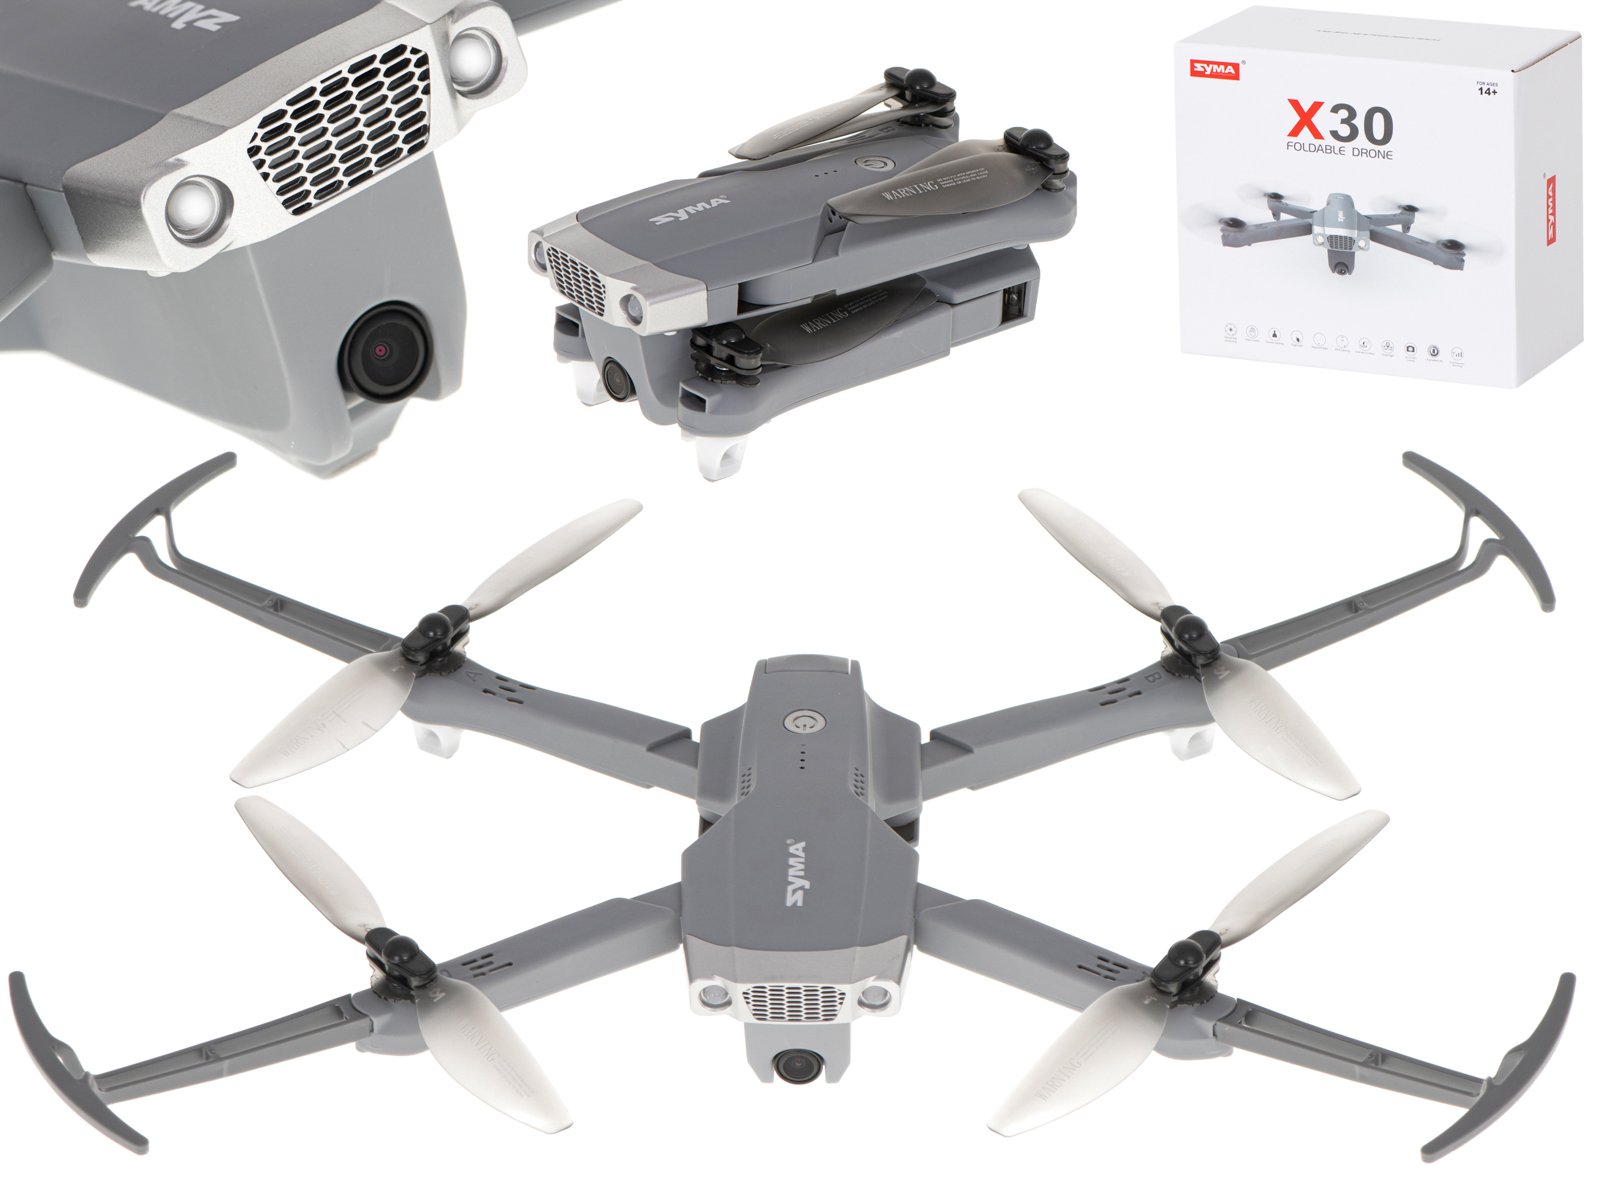 Syma X30 Drone 2.4GHz / GPS / FPV / WIFI / 1080p